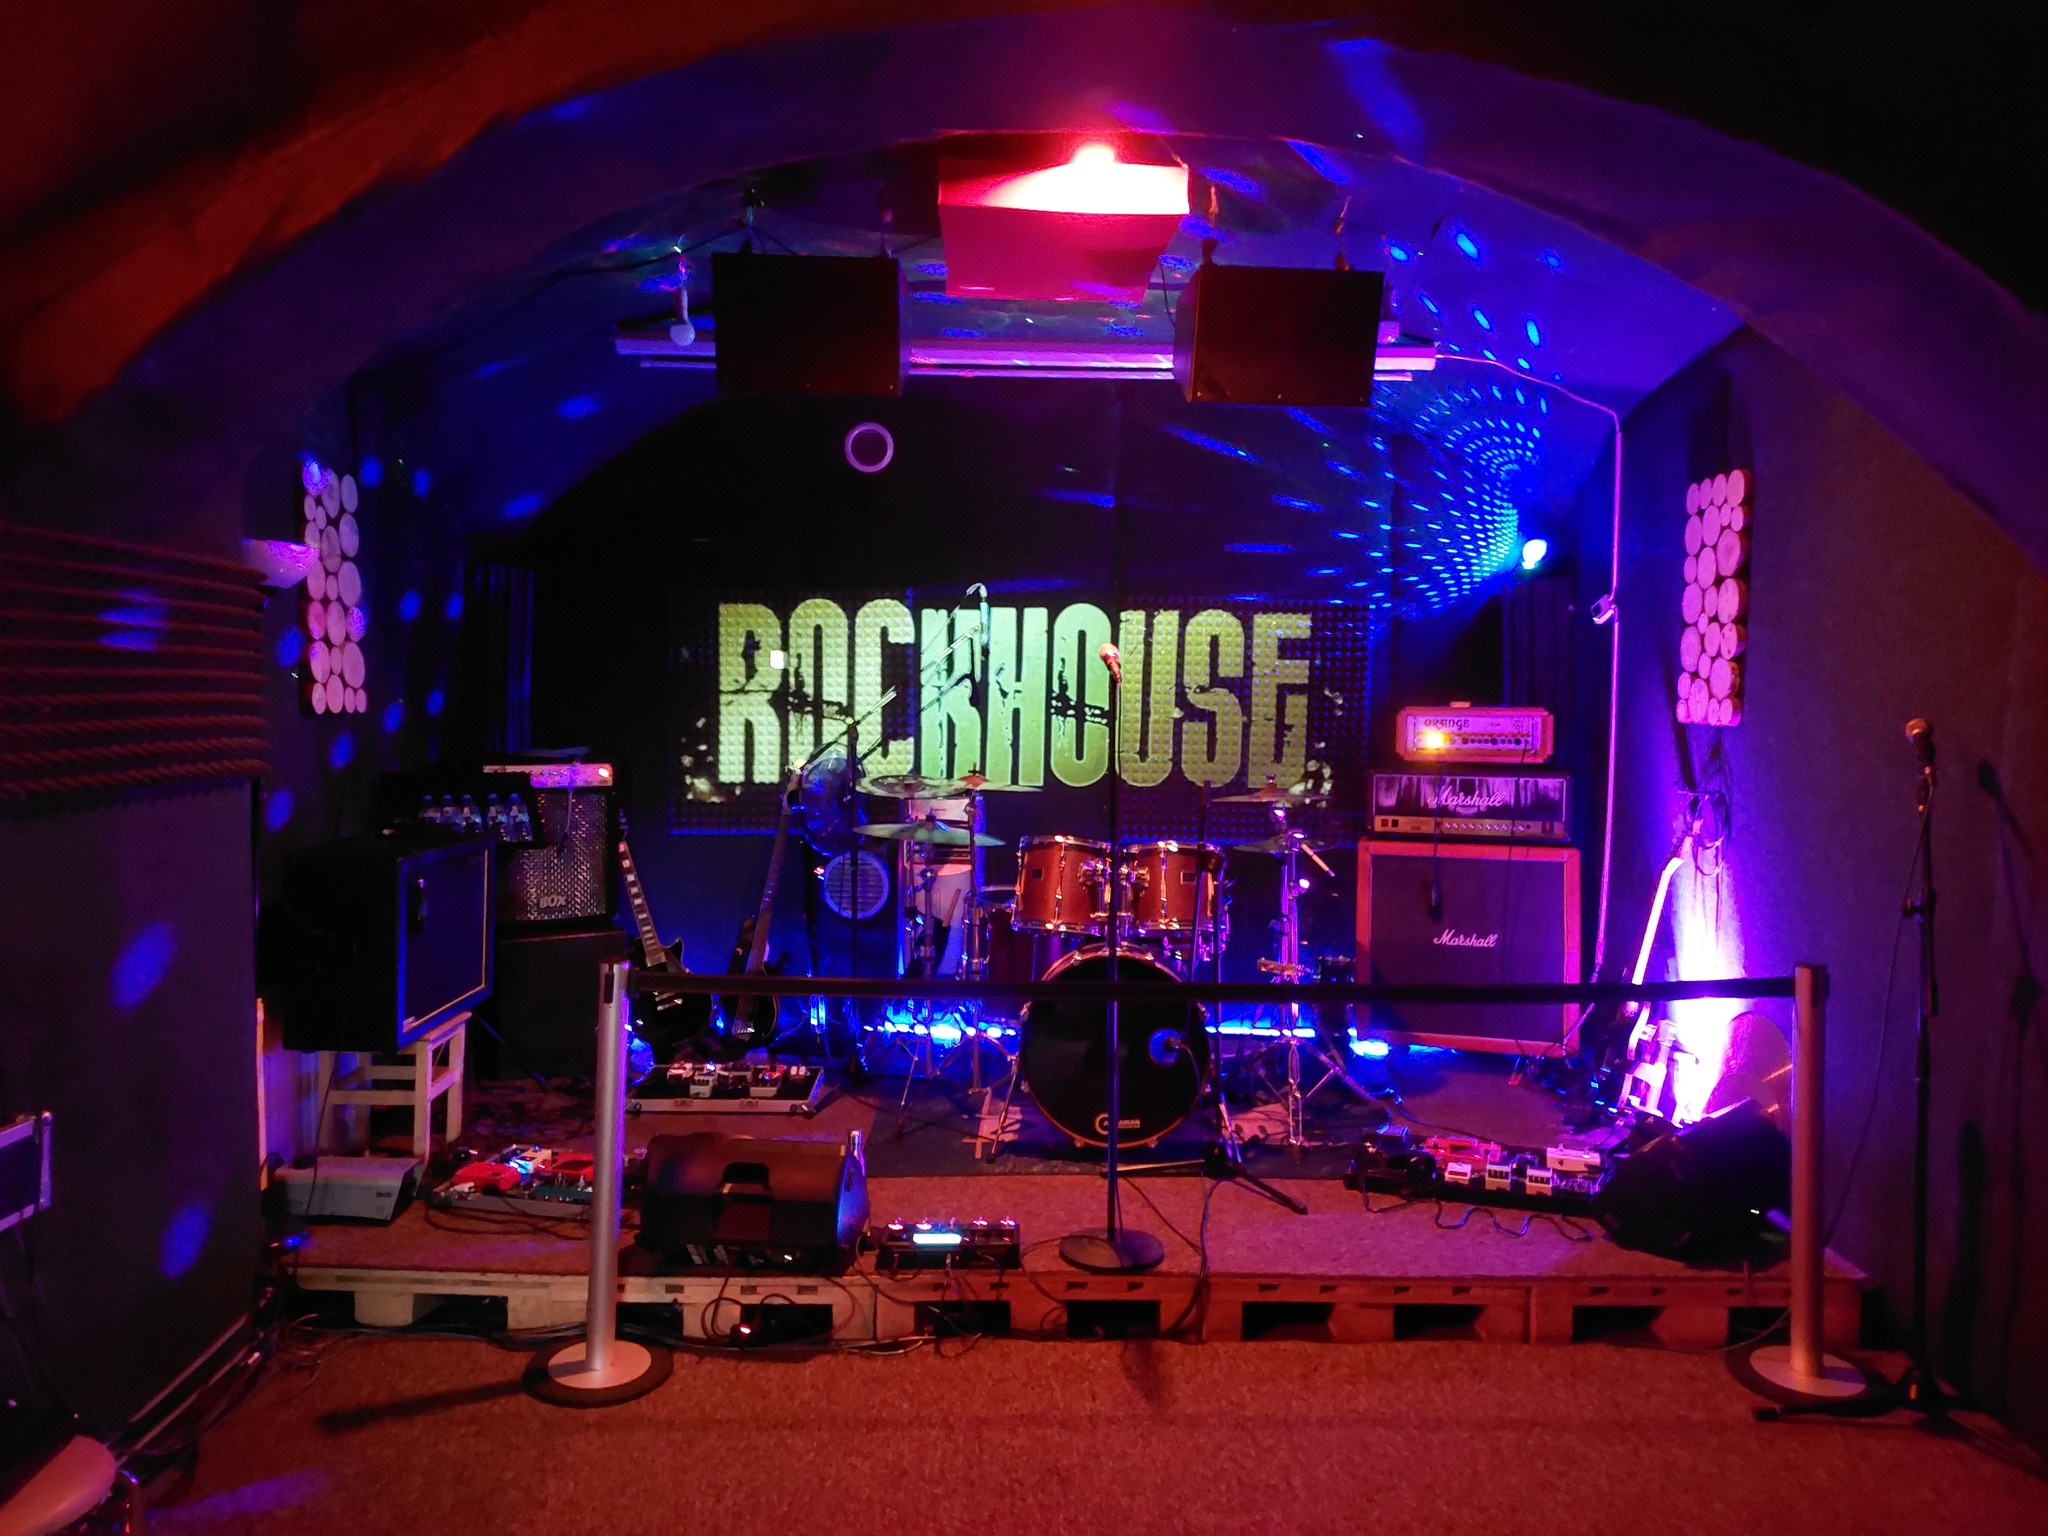 Rockhouse Studio